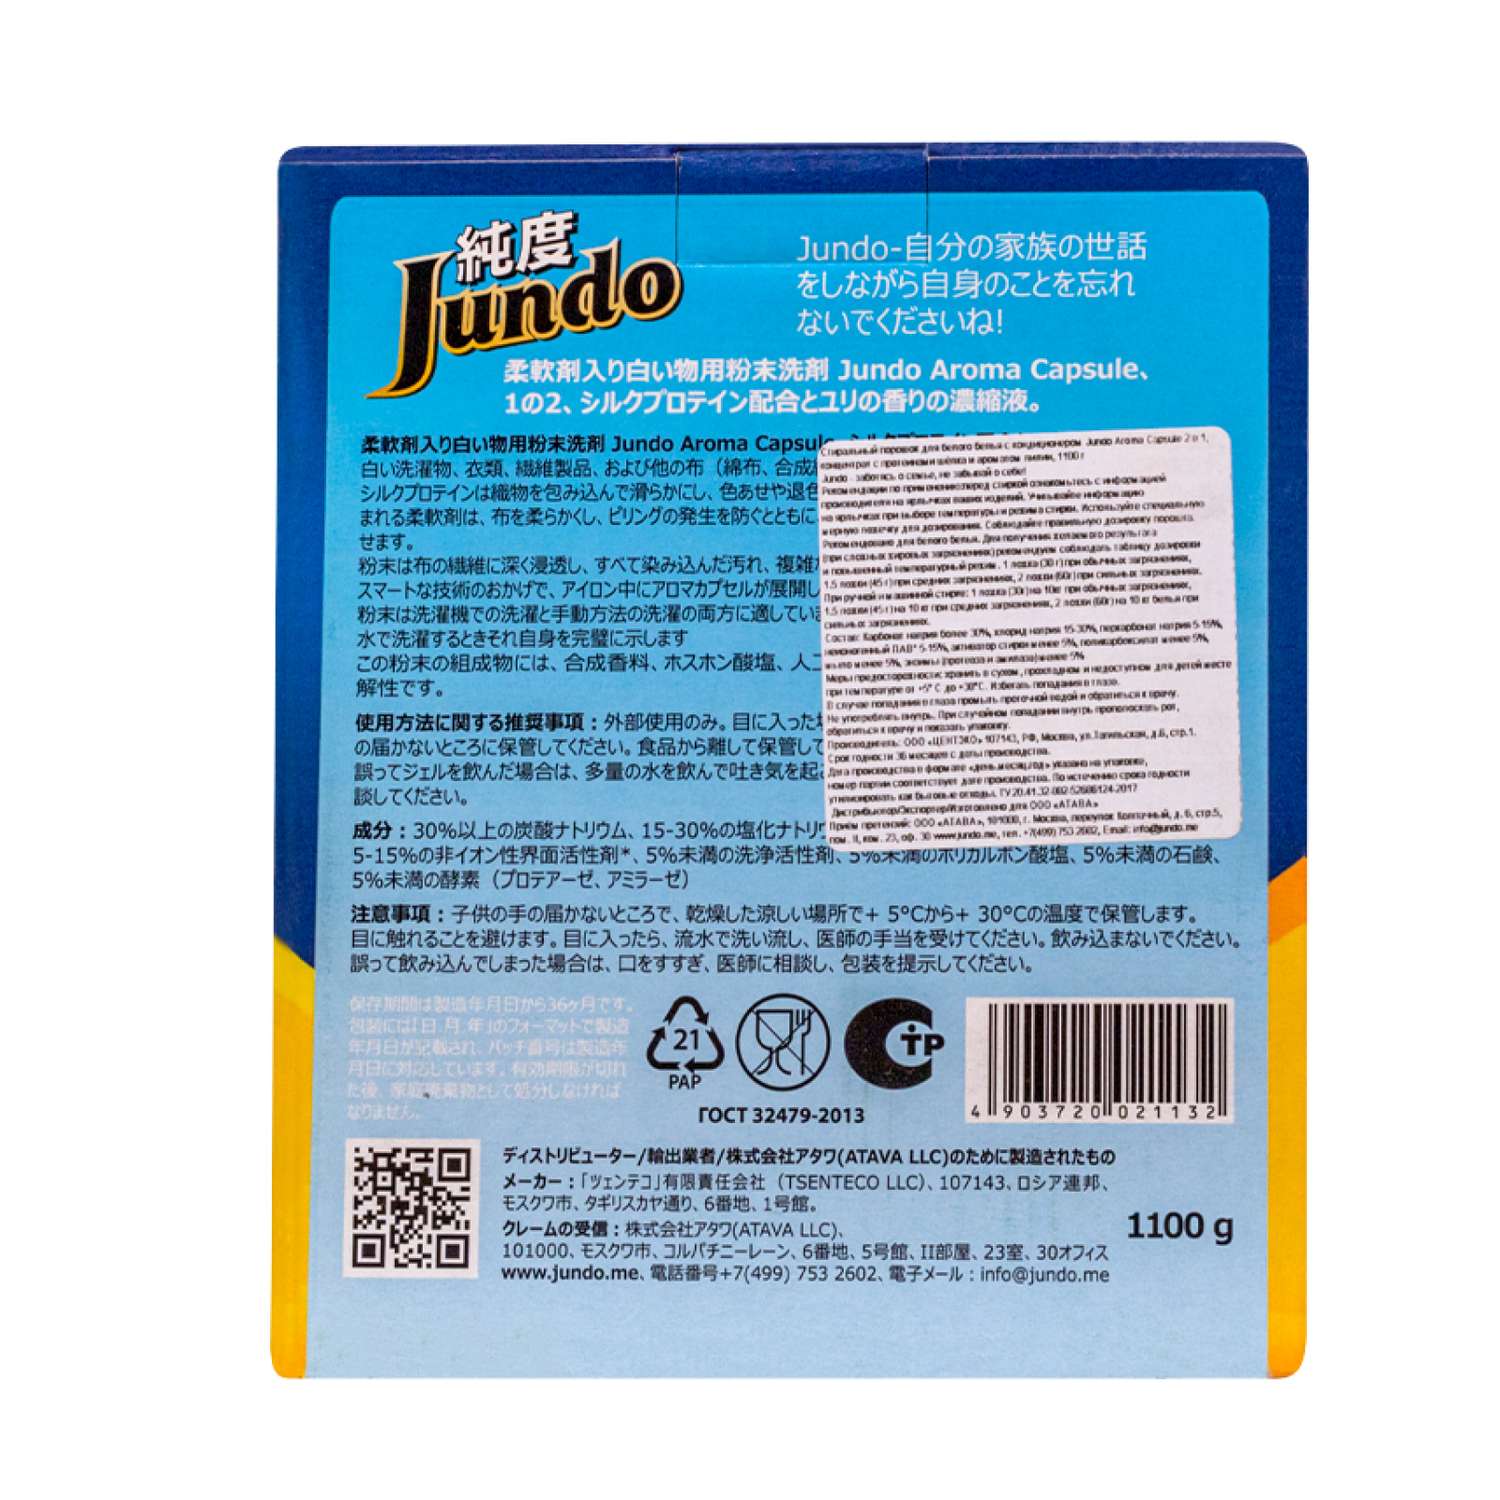 Стиральный порошок Jundo Aroma Capsule 2 в 1 для белого белья с кондиционером 1.1кг автомат концентрат аромат лилии - фото 9